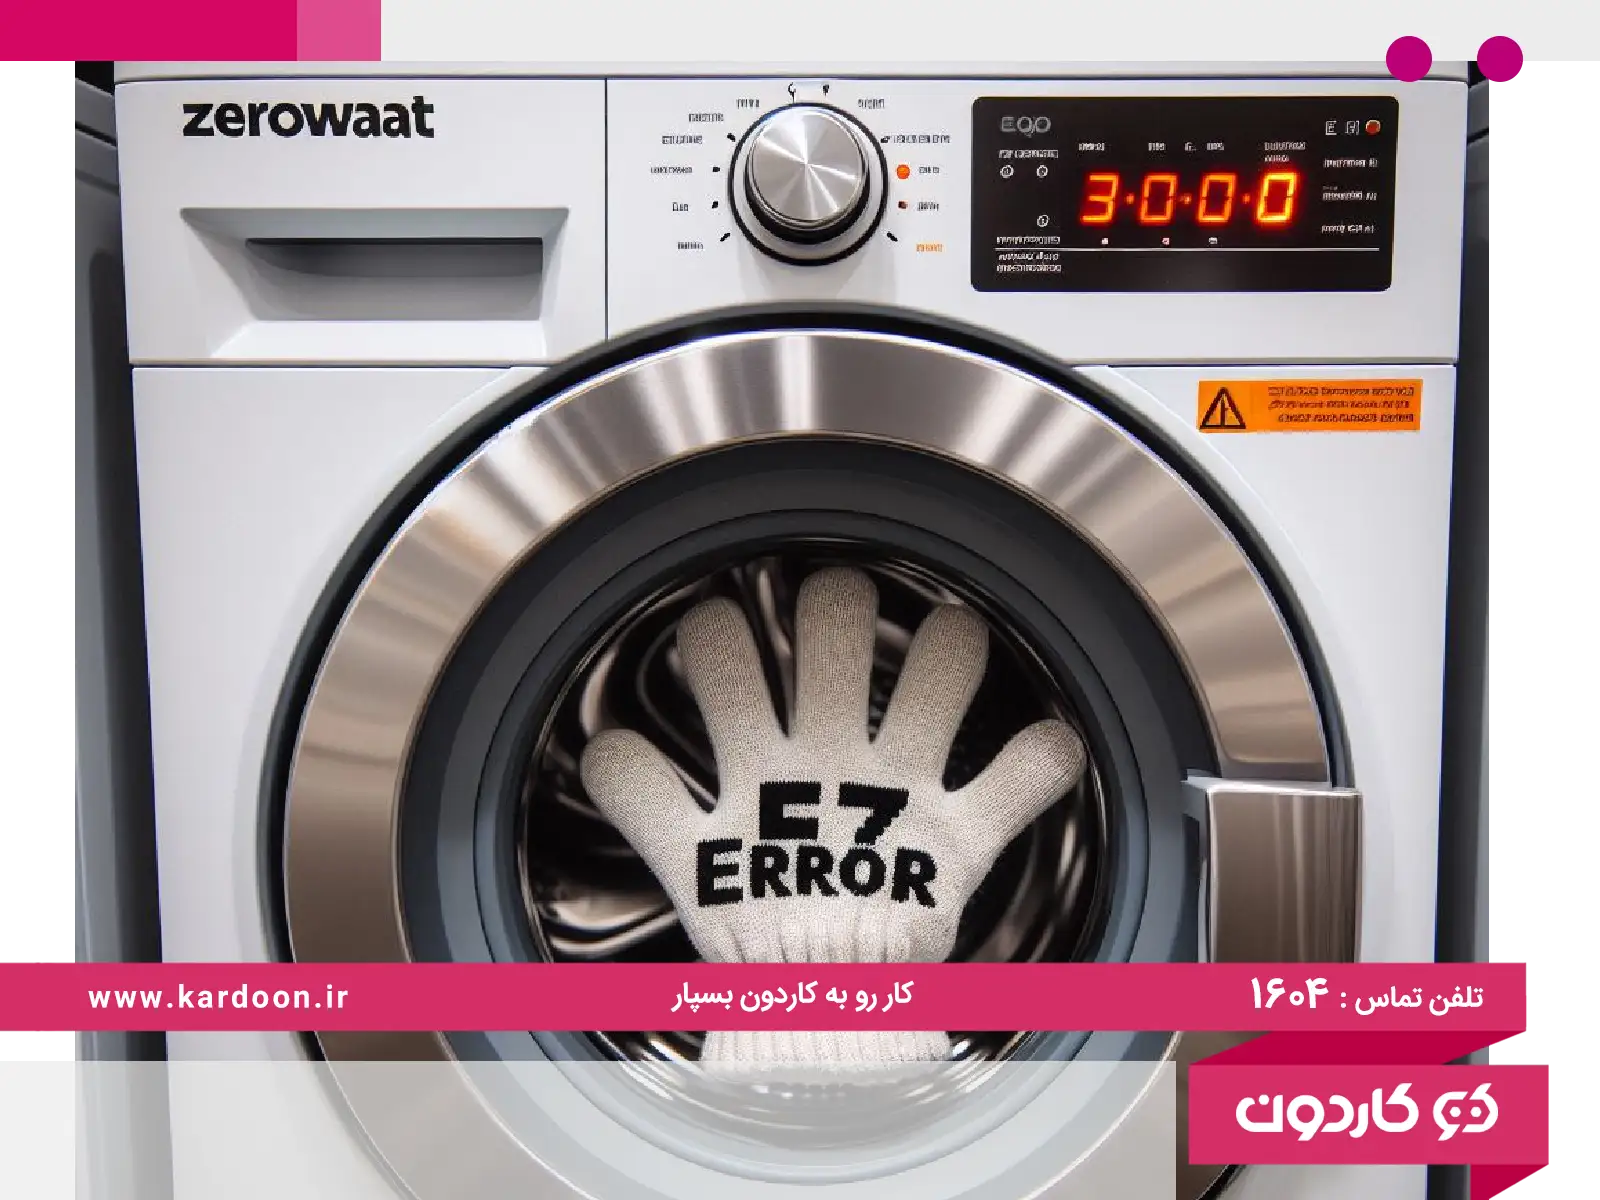 The cause of the e7 error in the Zerowatt washing machine